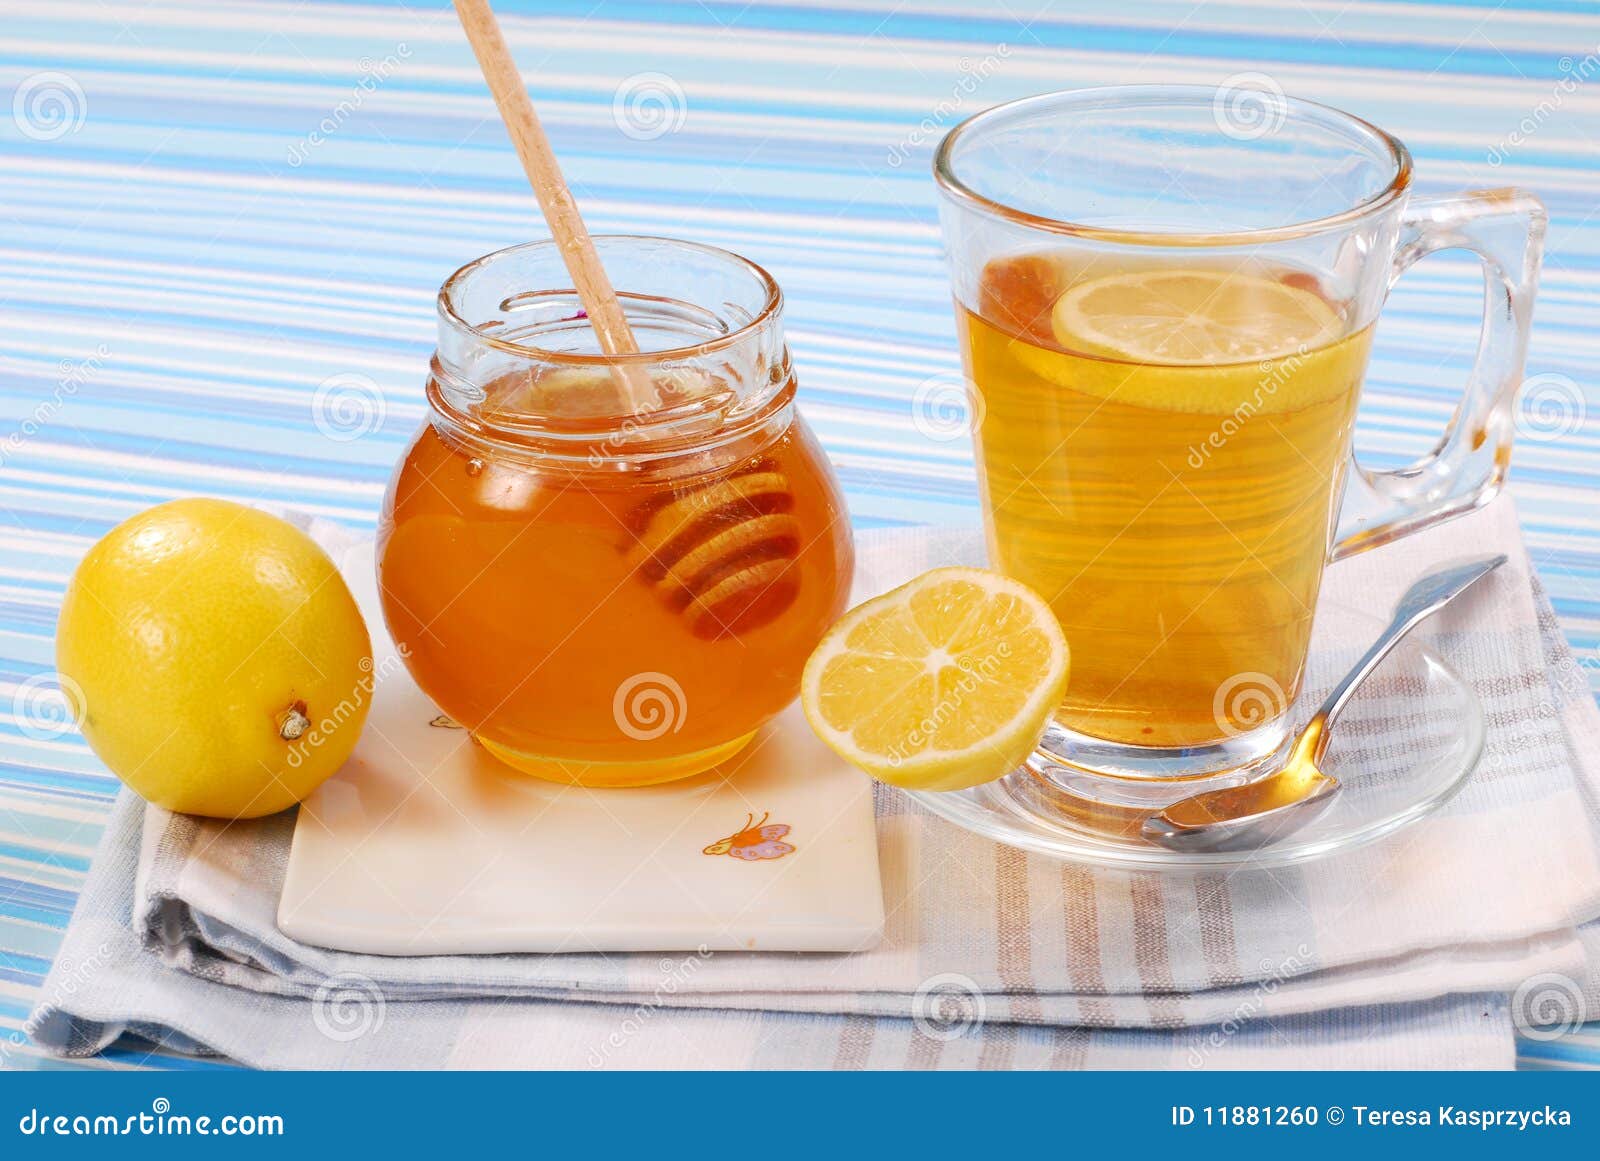 蜂蜜柠檬 库存照片. 图片 包括有 本质, 成份, 液体, 保护, 季节, 维生素, 瓶子, 流感, 橙色 - 47964376